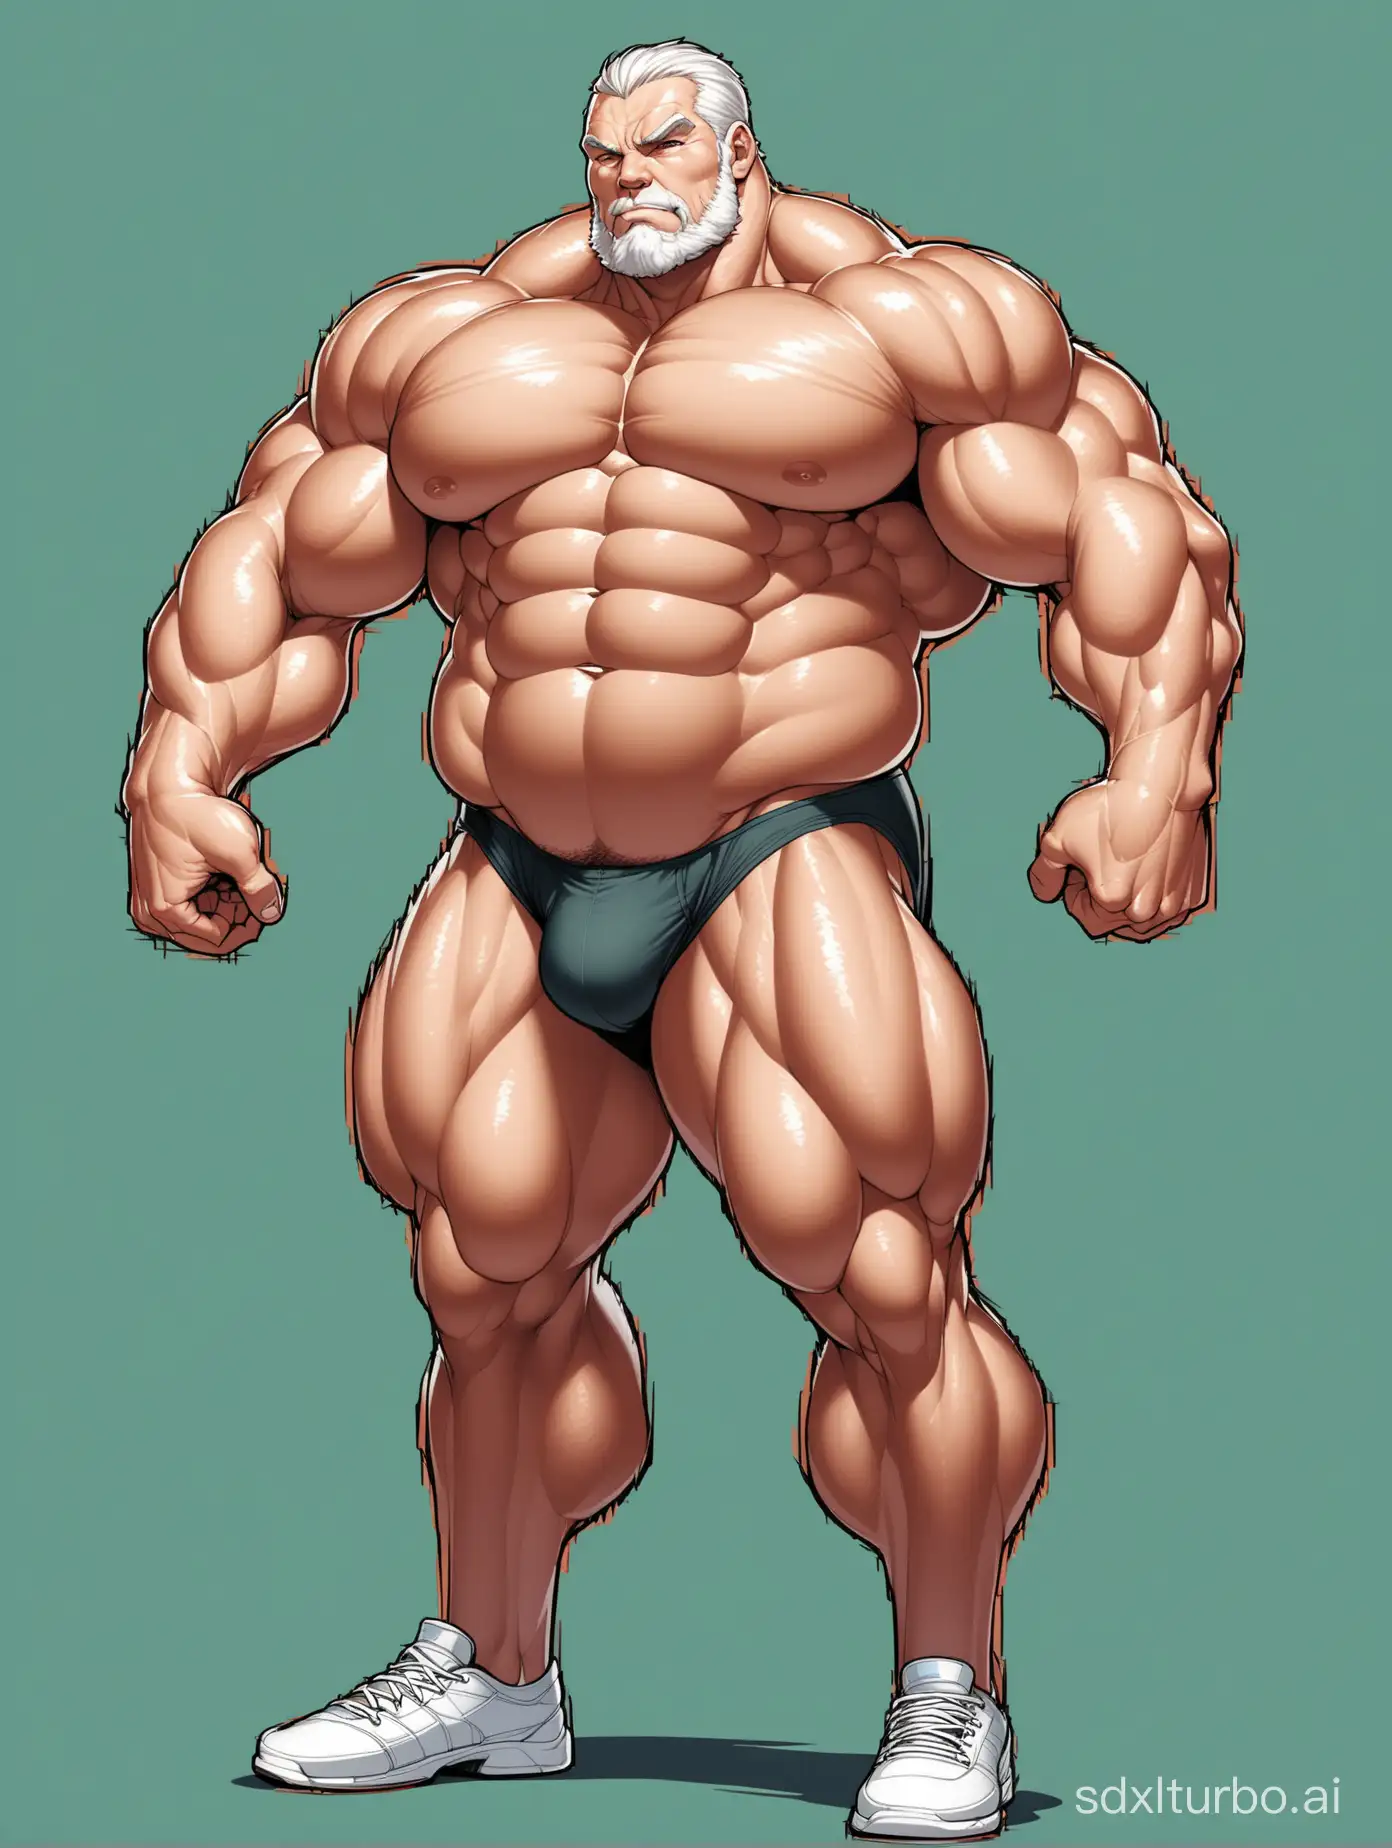 Massive-Muscle-Stud-in-White-Underwear-Flexing-Biceps